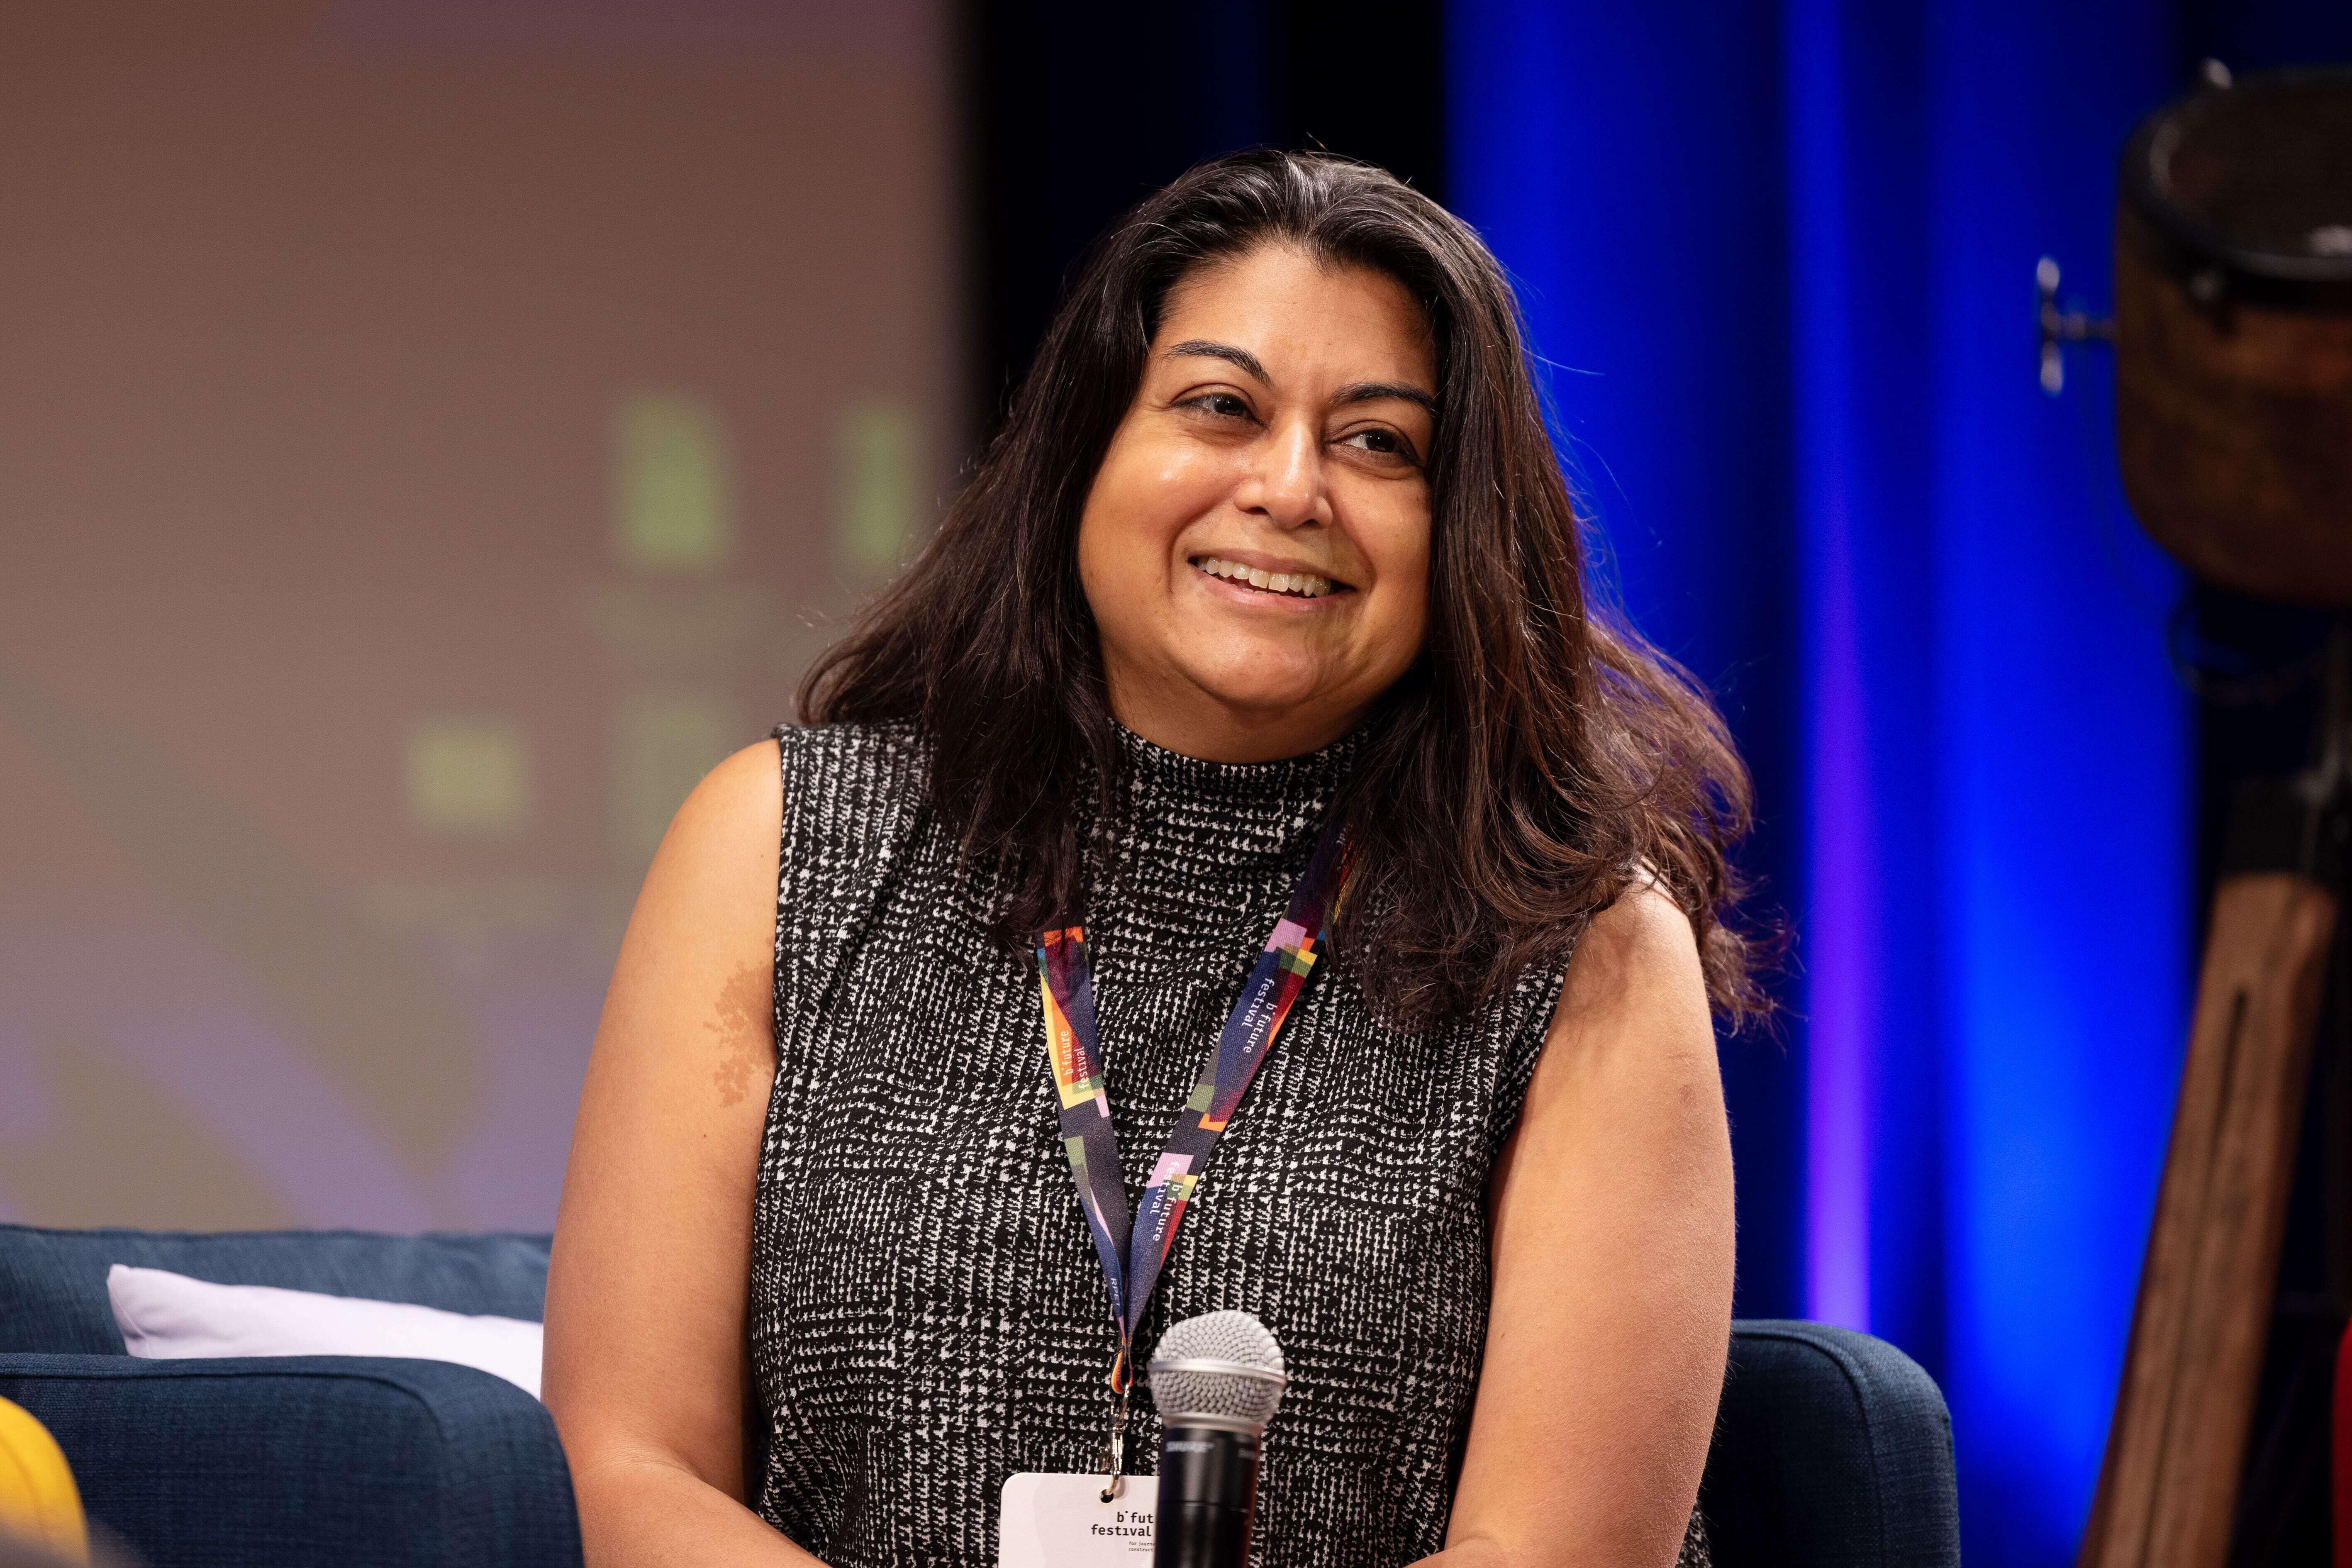 Aparna Mukherjee, Chief Programs Officer bei Resolve Philliy, beteiligt sich an einer Podiumsdiskussion und lächelt freundlich